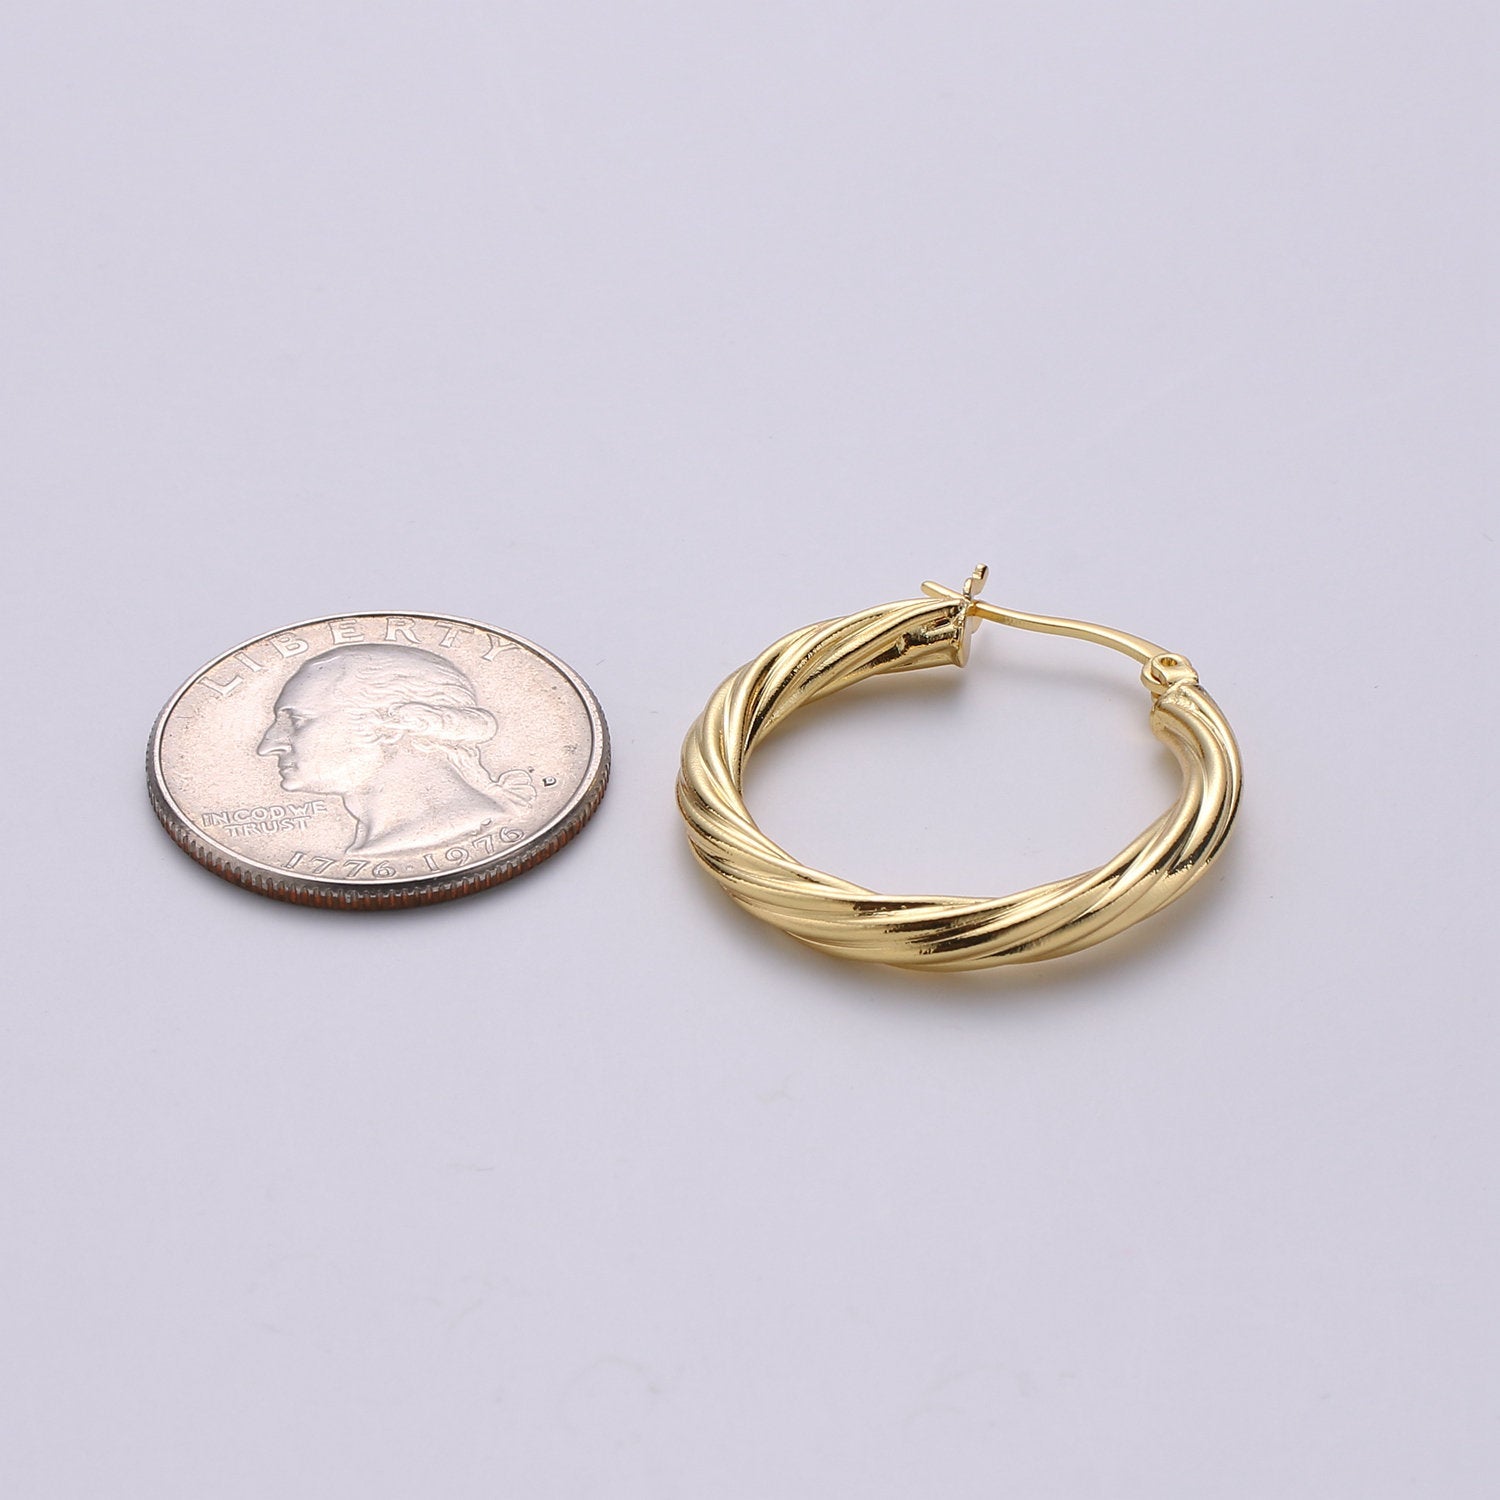 24k Vermeil Gold Earrings, Hoop Earrings, Small Hoop, Circle Rope Texture Earring, Gift for Her, Earrings for Women, Everyday Wear Earrings - DLUXCA